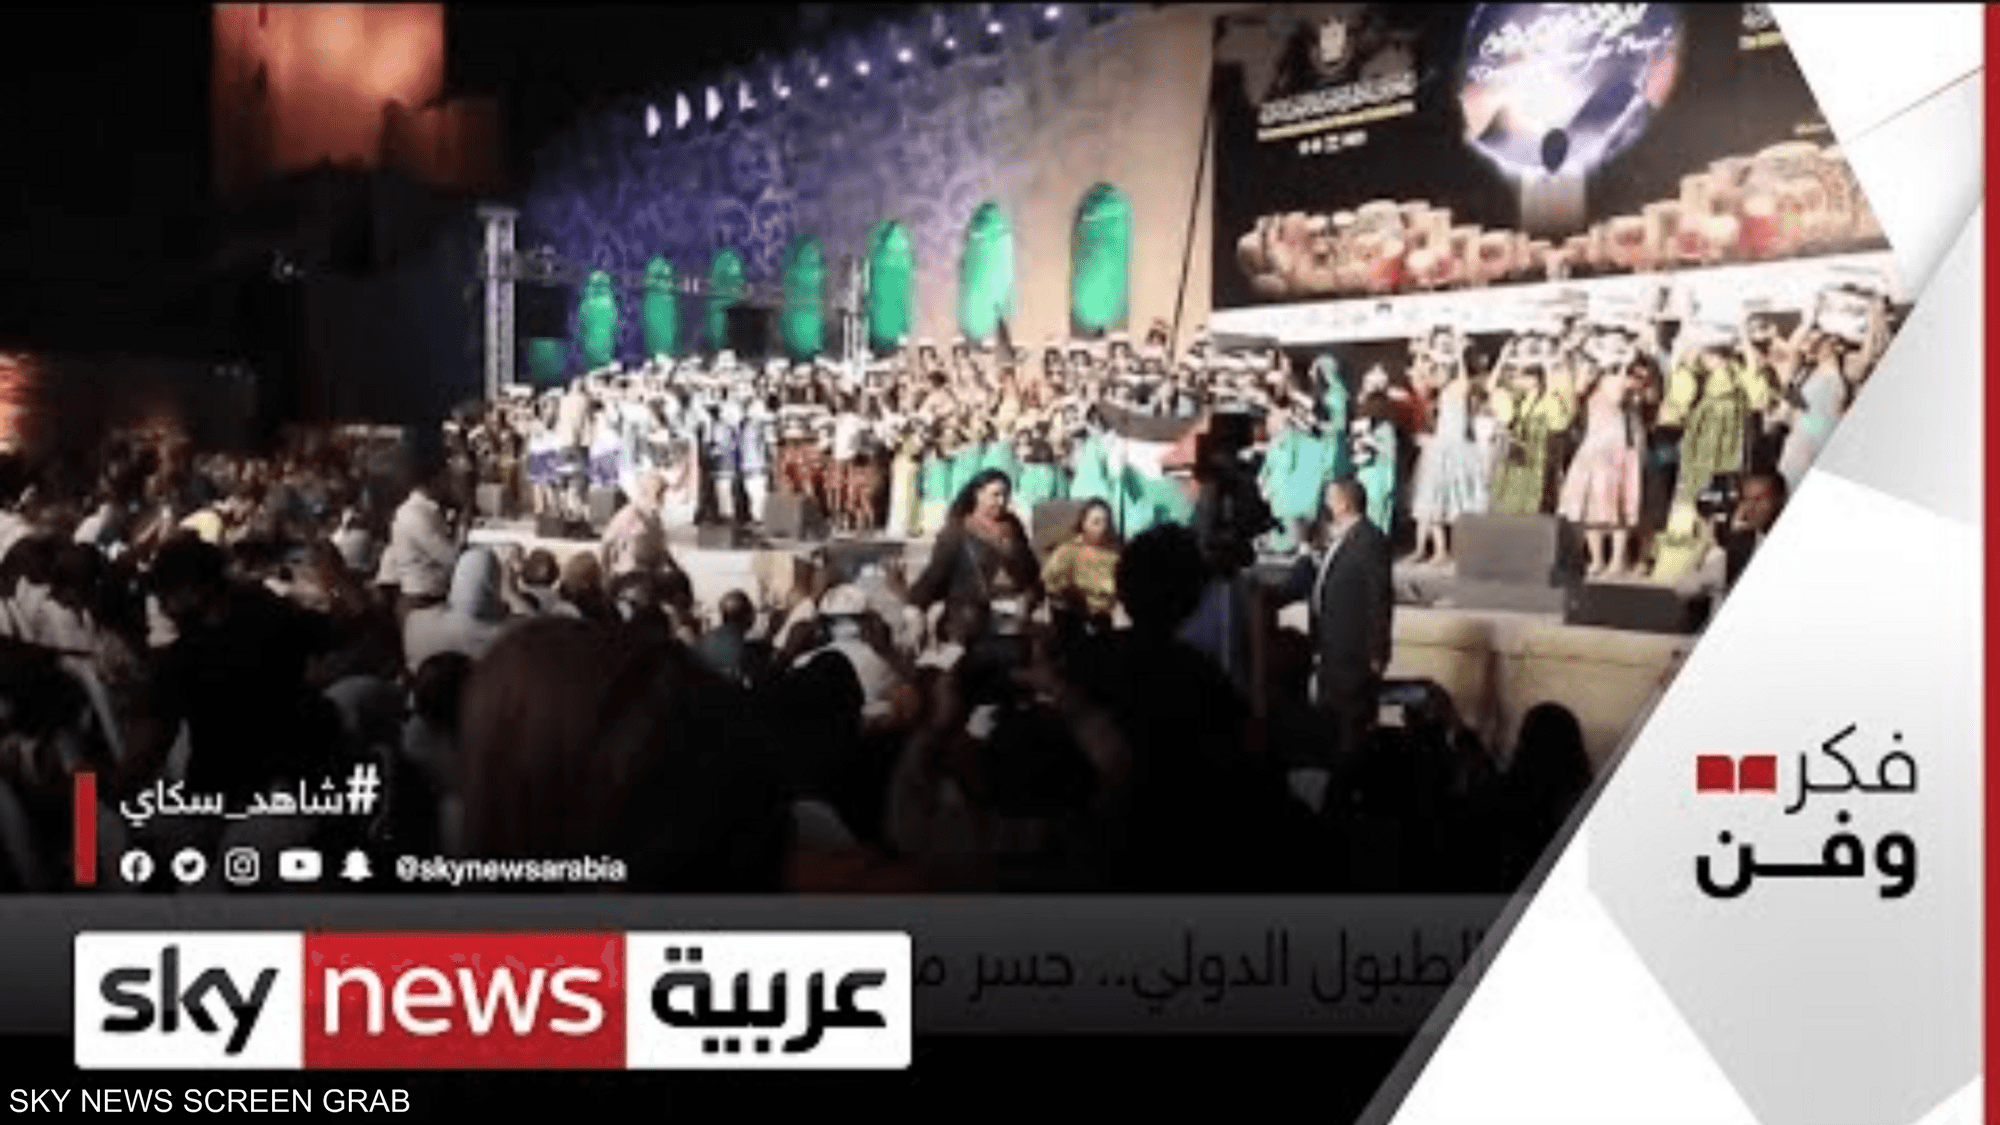 مهرجان الطبول بالقاهرة.. ملتقى للمحبة والسلام بين الشعوب